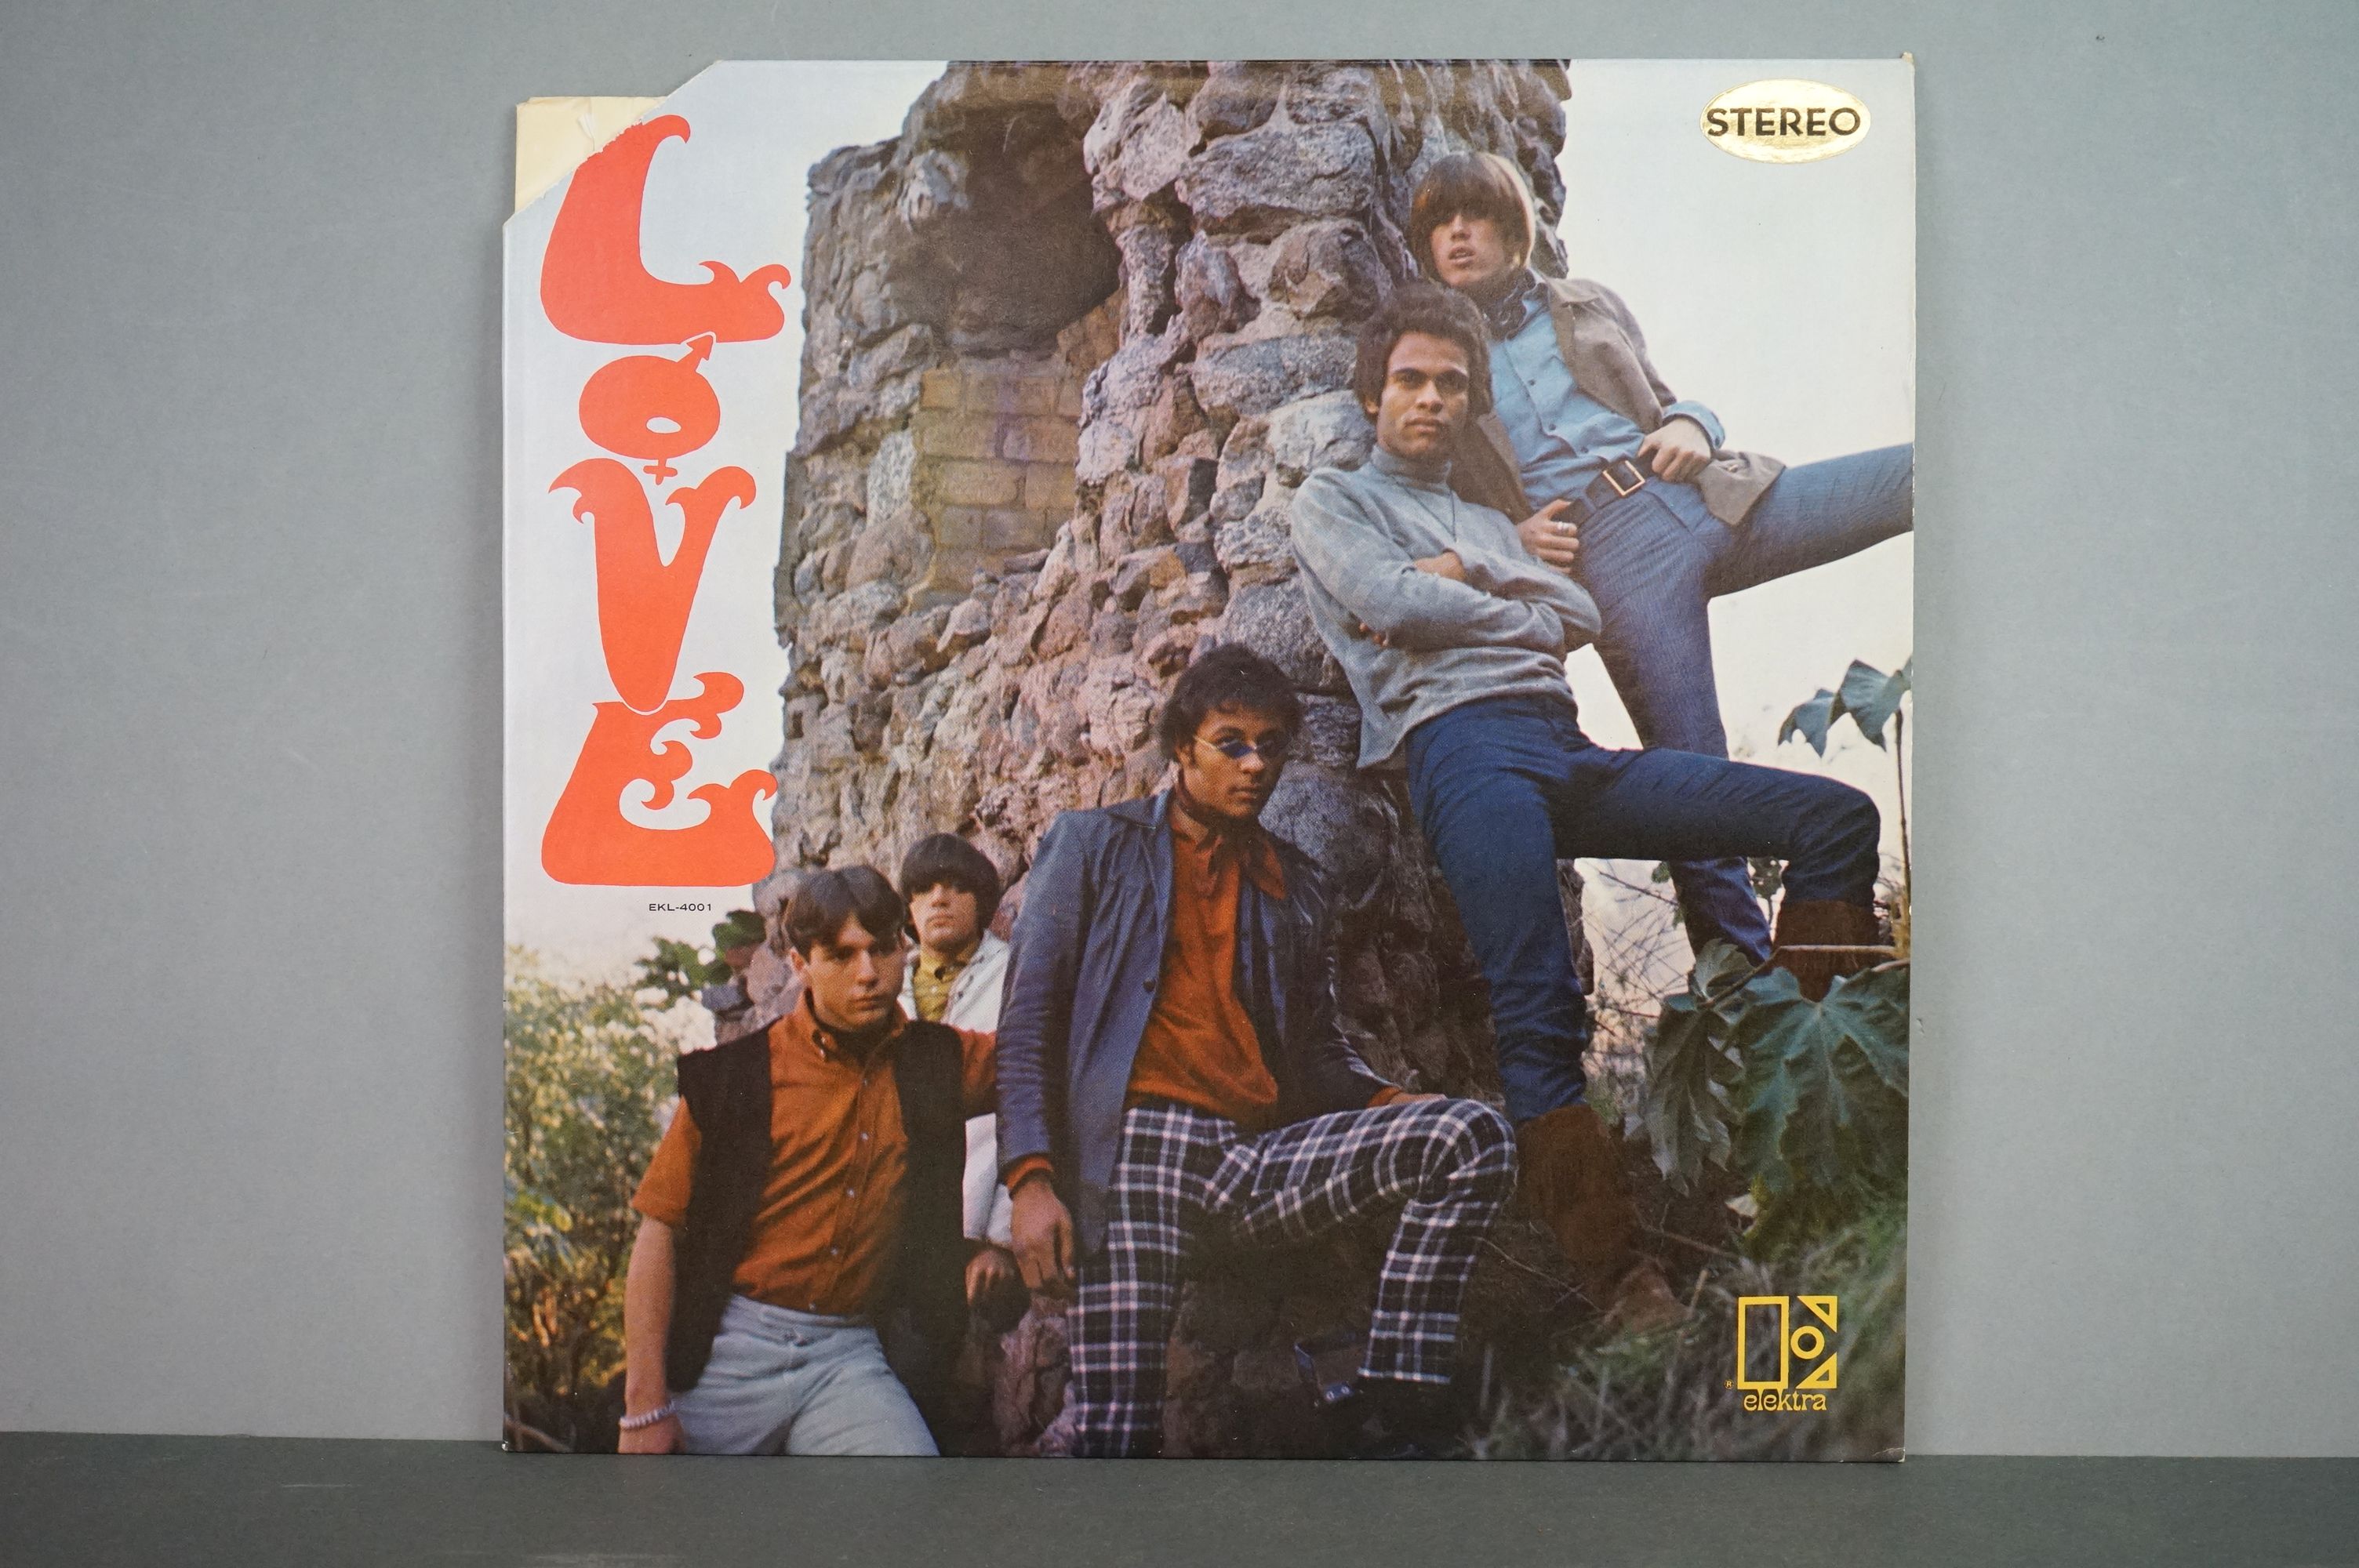 Vinyl - Love self titled EKS74001 orange label, Recording first published March 1966 bottom of